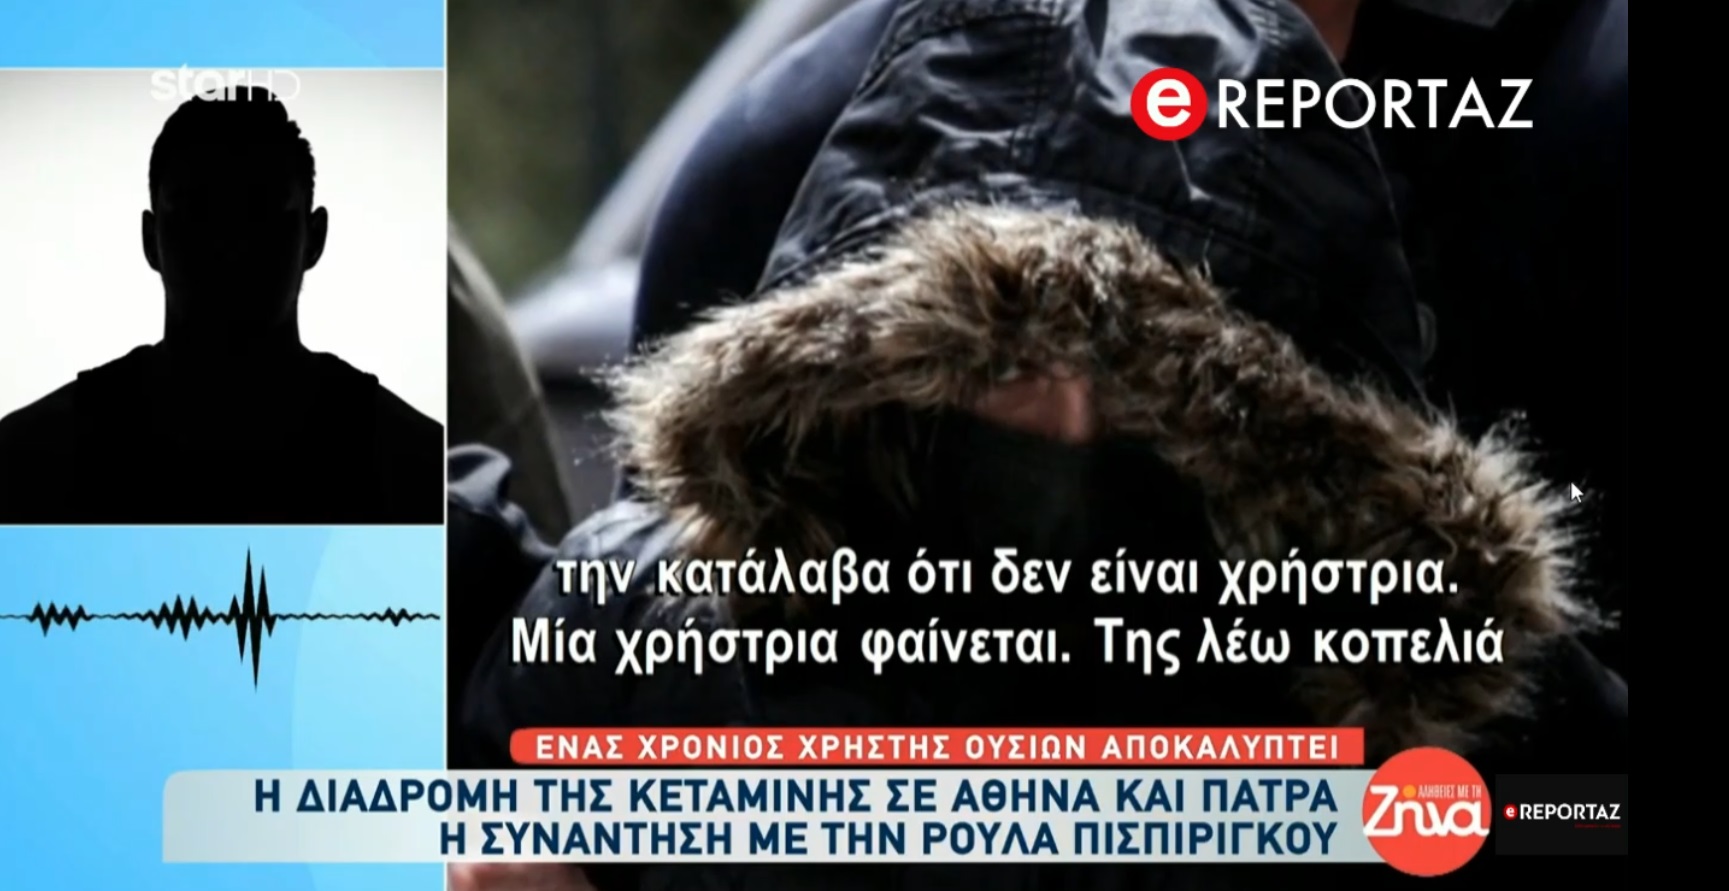 Η διαδρομή της κεταμίνης σε Αθήνα και Πάτρα - Η αποκάλυψη της ΜΠΑΜ και του ereportaz.gr (βίντεο)